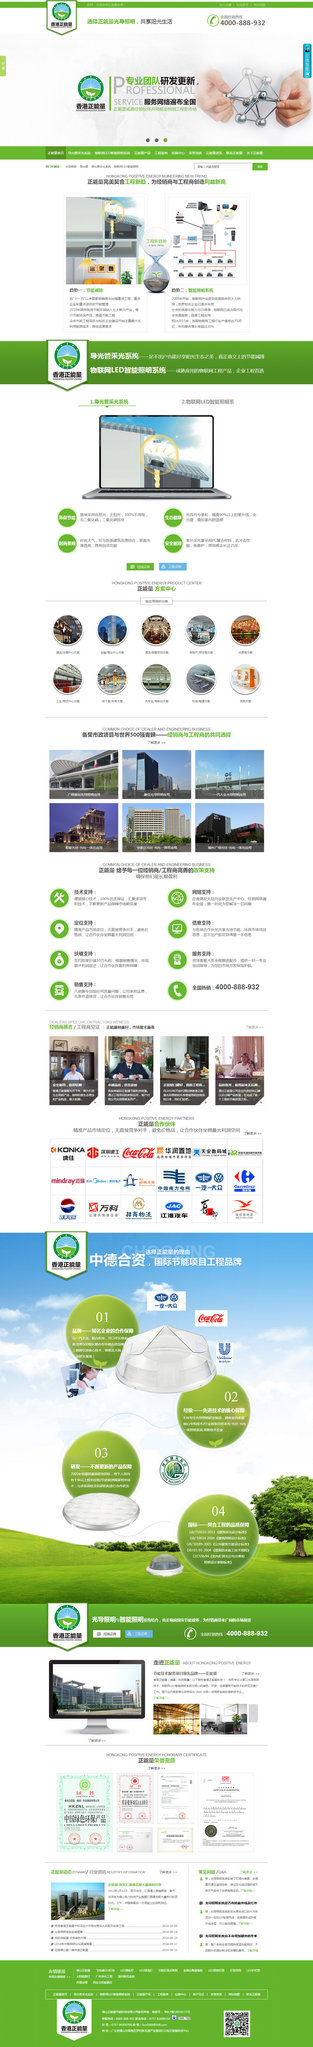 香港正能量营销型网站案例展示